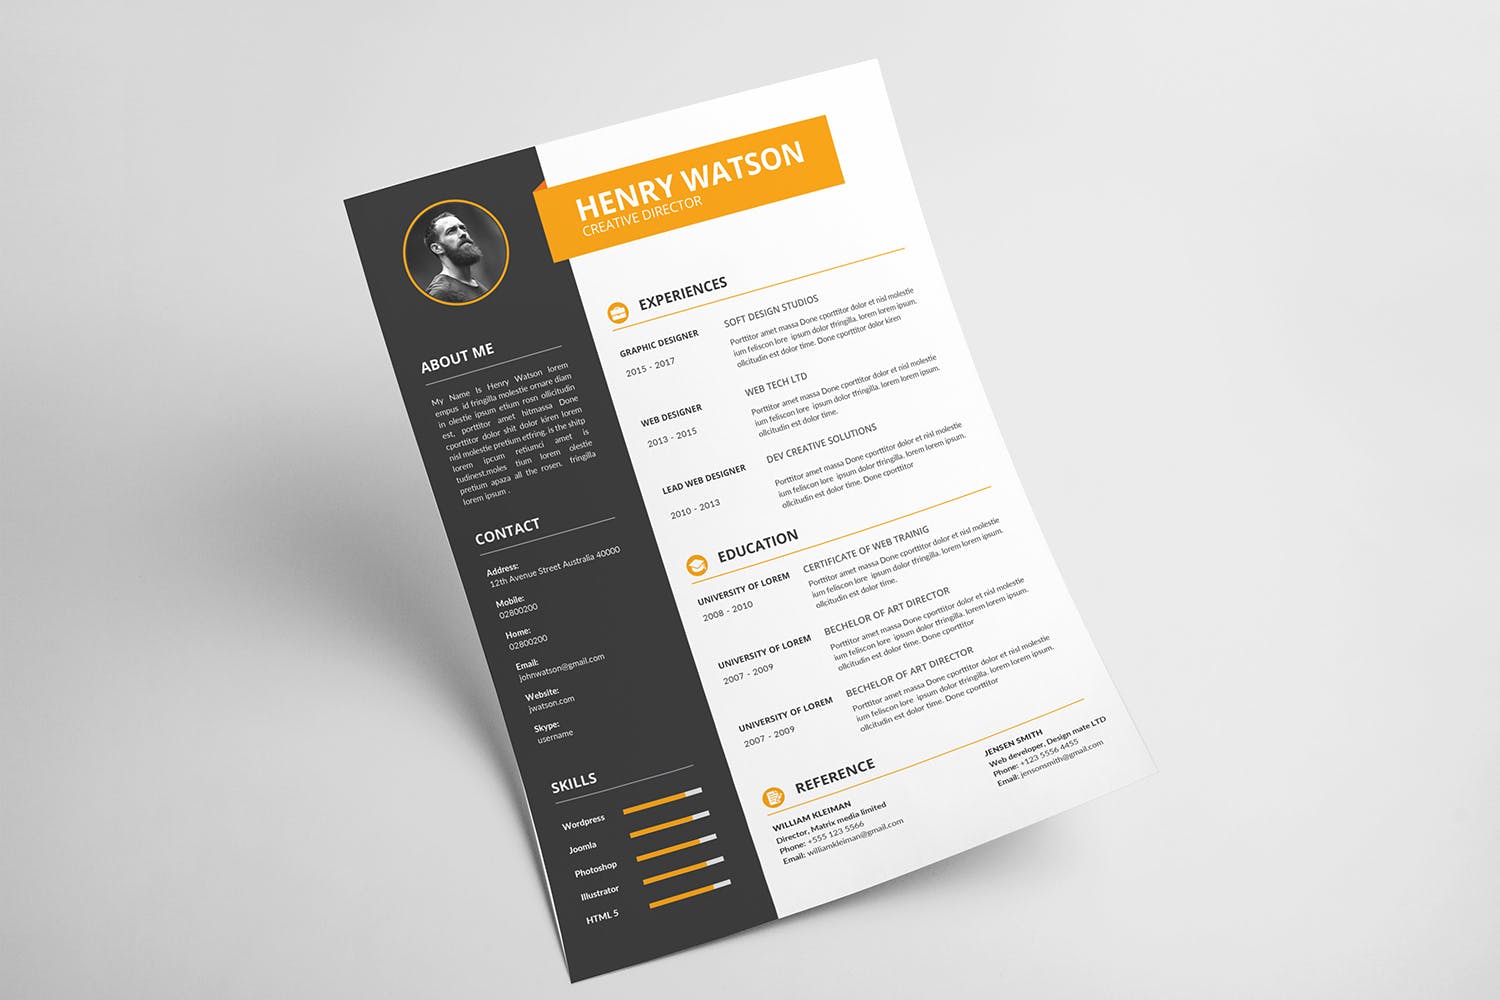 两列式排版风格个人简历&介绍信设计模板 CV Resume插图2